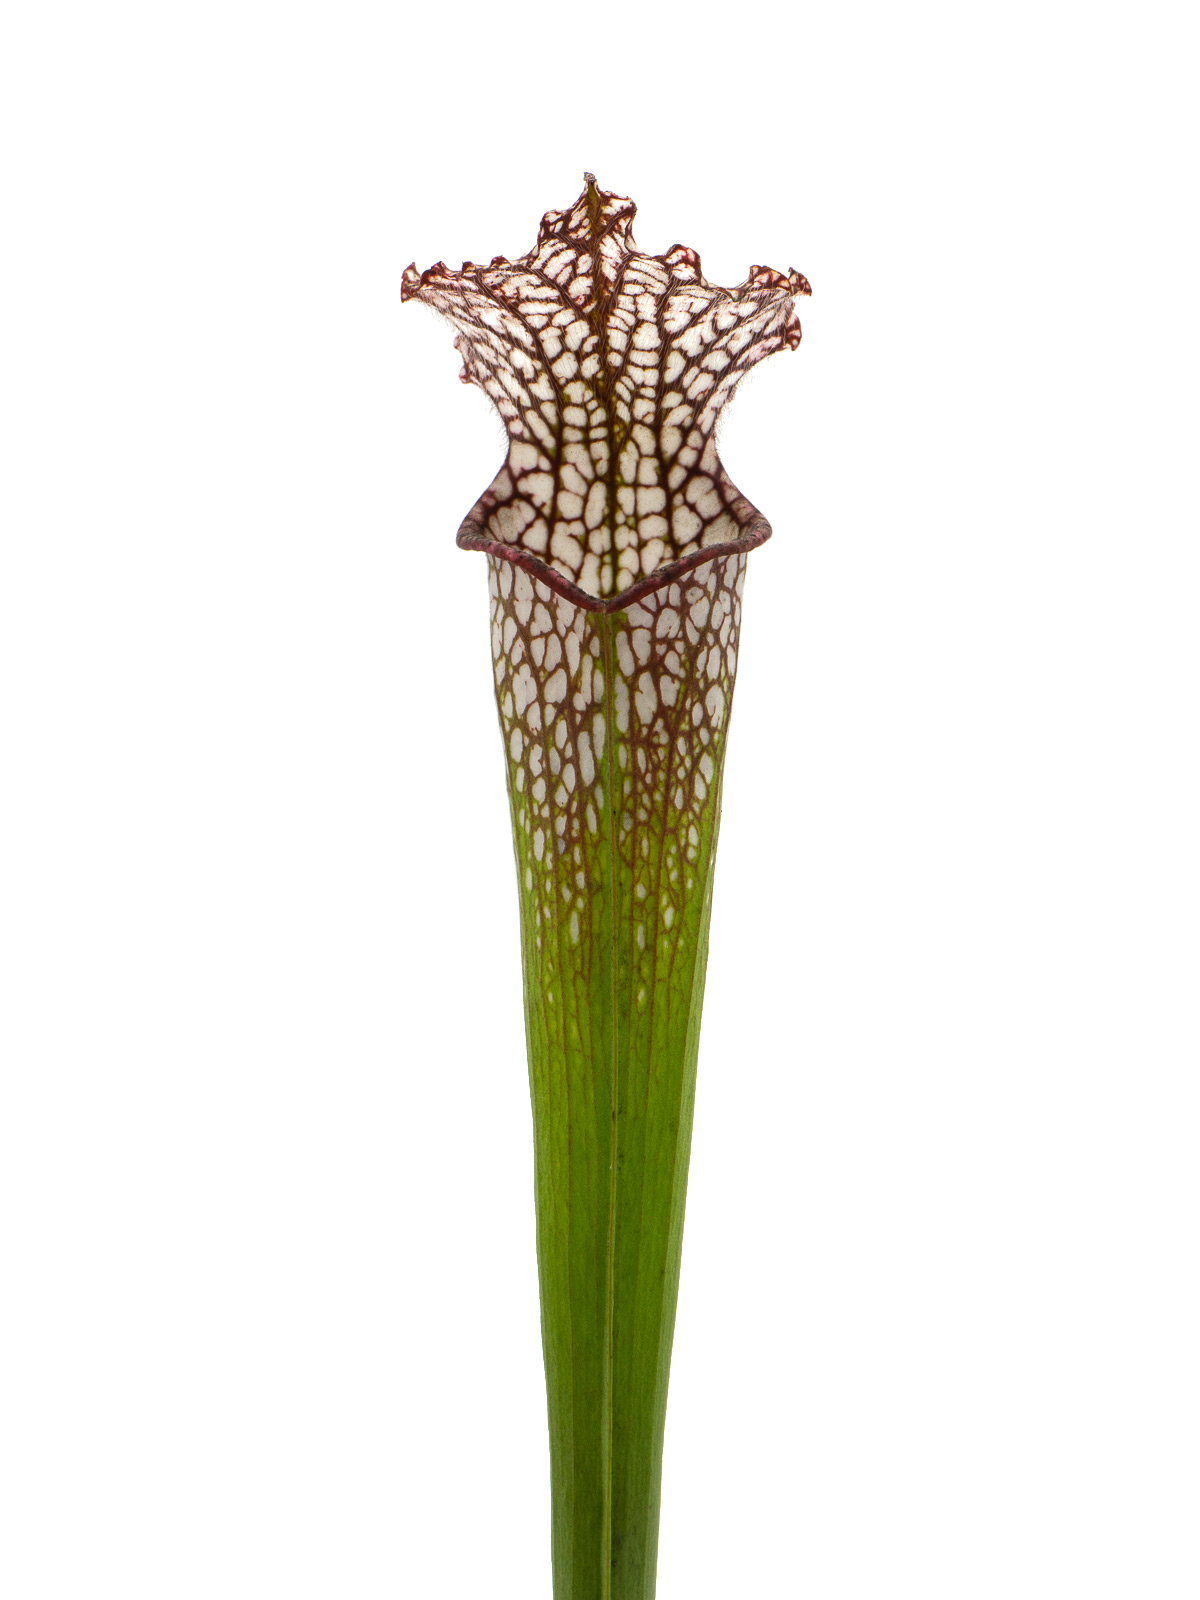 Sarracenia leucophylla - MK L107B, Conecuh National Forest, Alabama